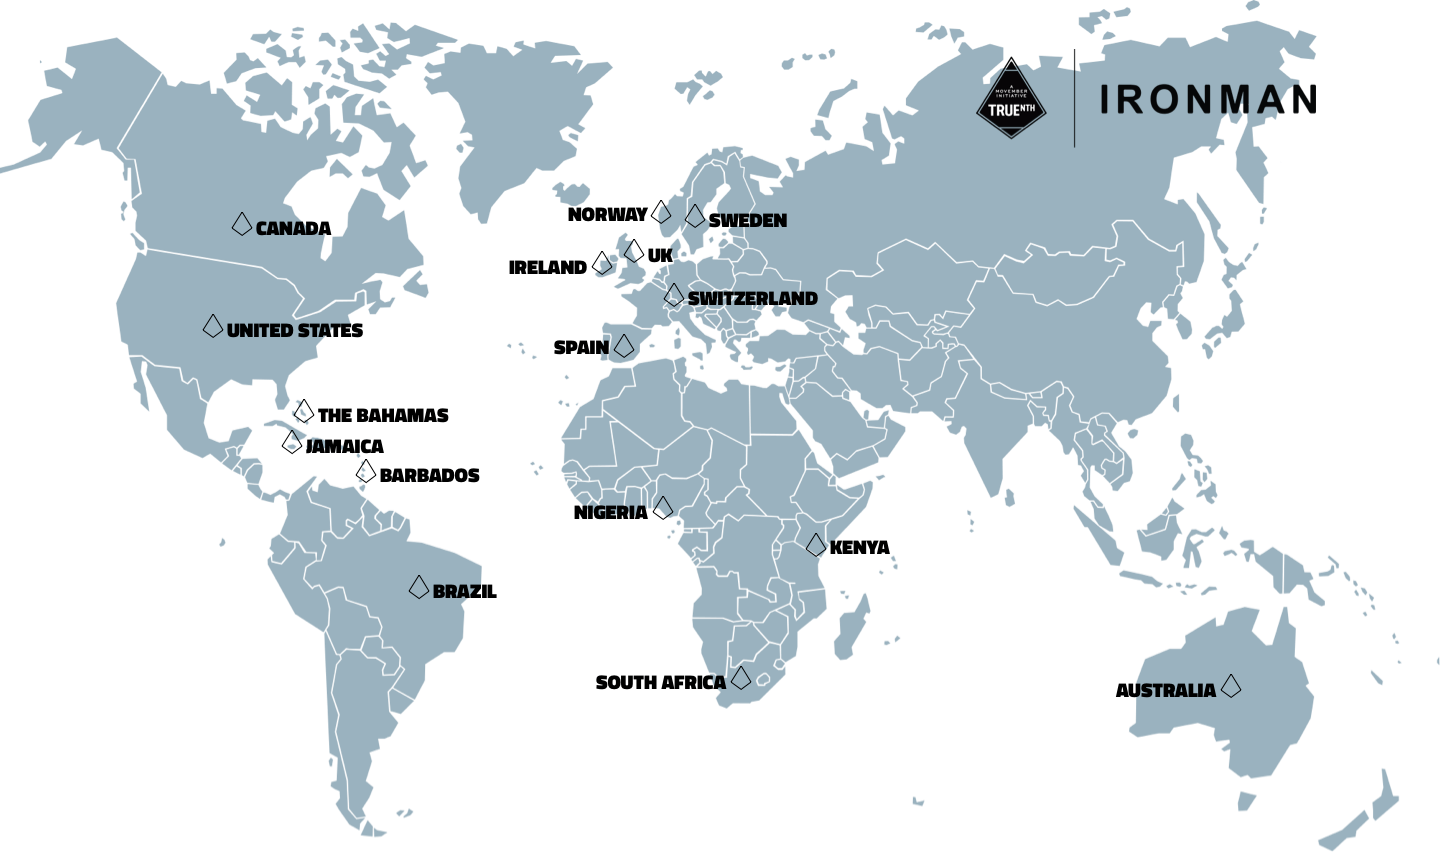 Ironman World Map